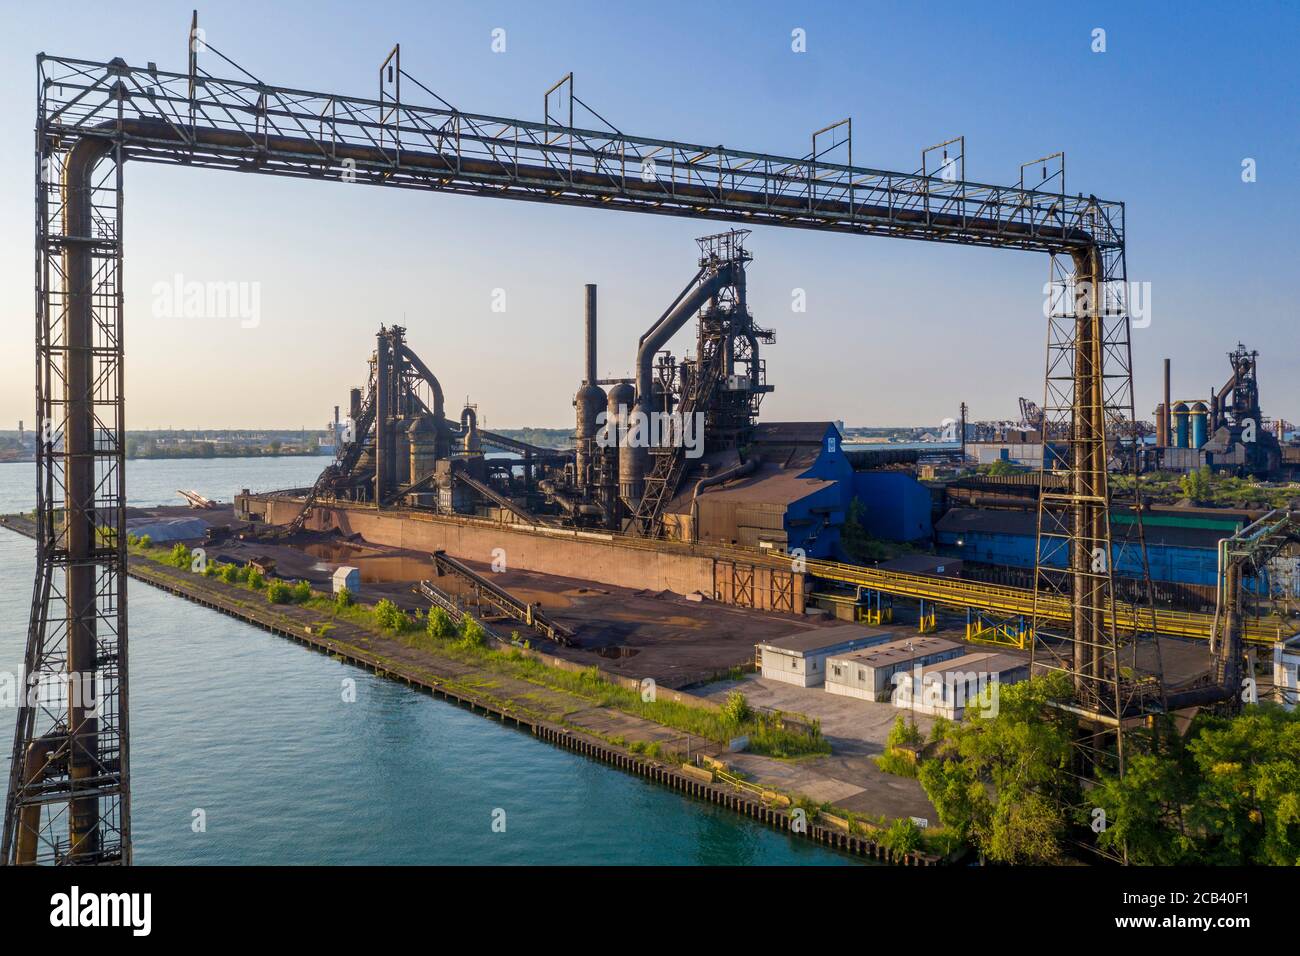 River Rouge, Michigan - la acciaieria degli Stati Uniti sull'isola di Zug, parte della Great Lakes Works dell'azienda che è in fase di chiusura. Una volta il mil Foto Stock